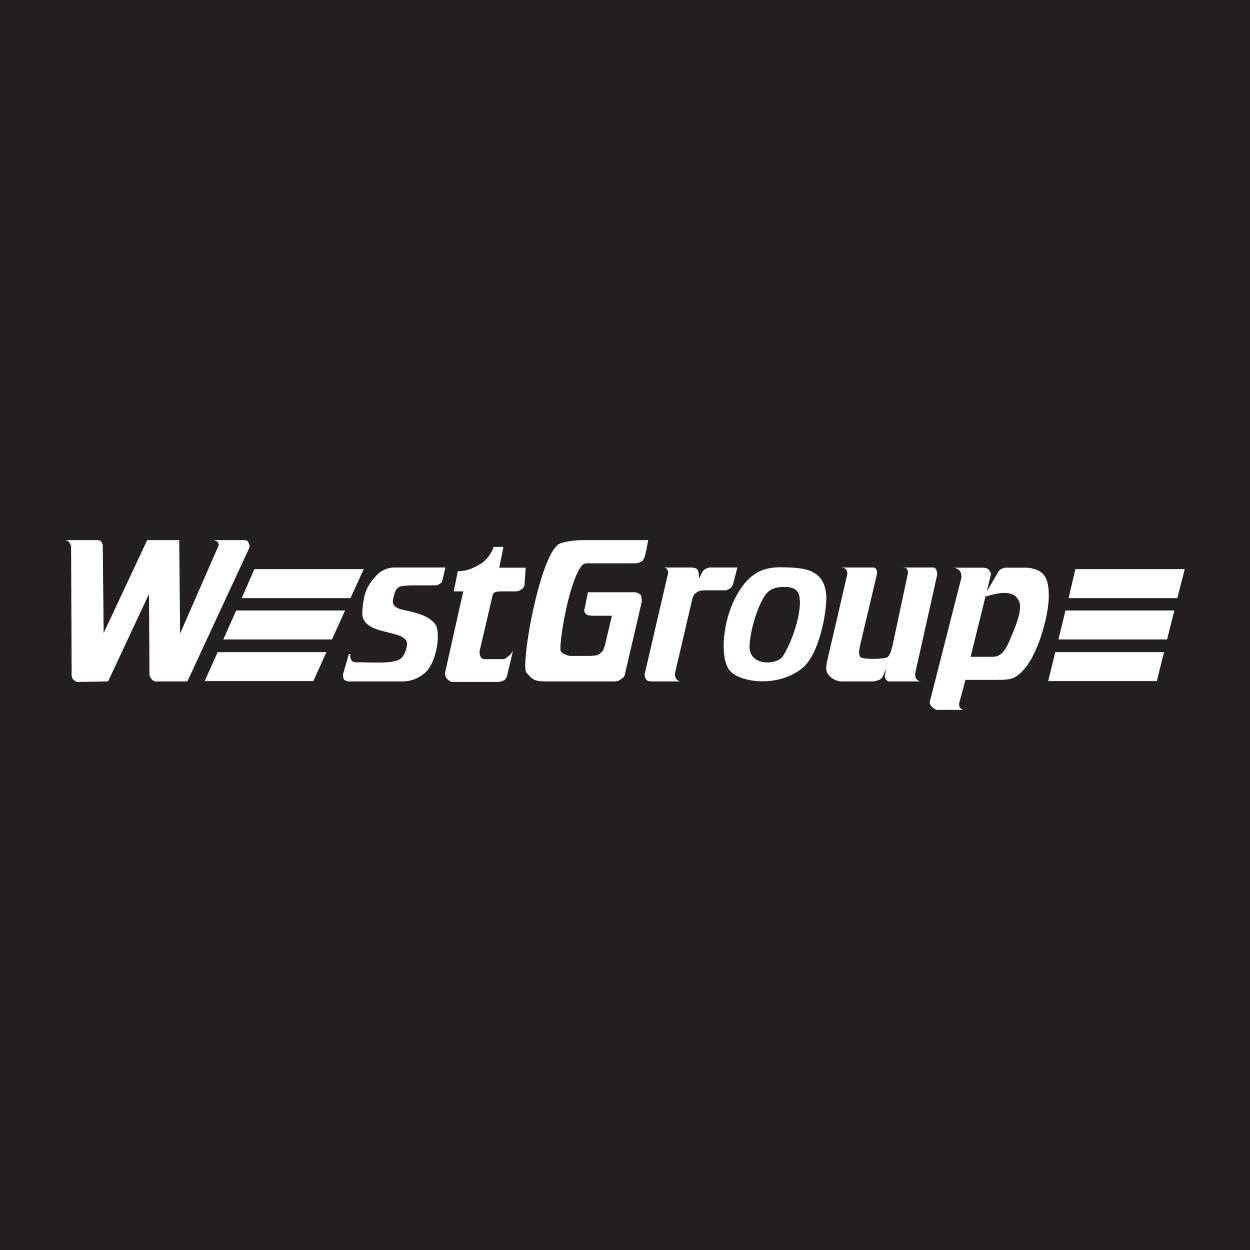 Westgroupe